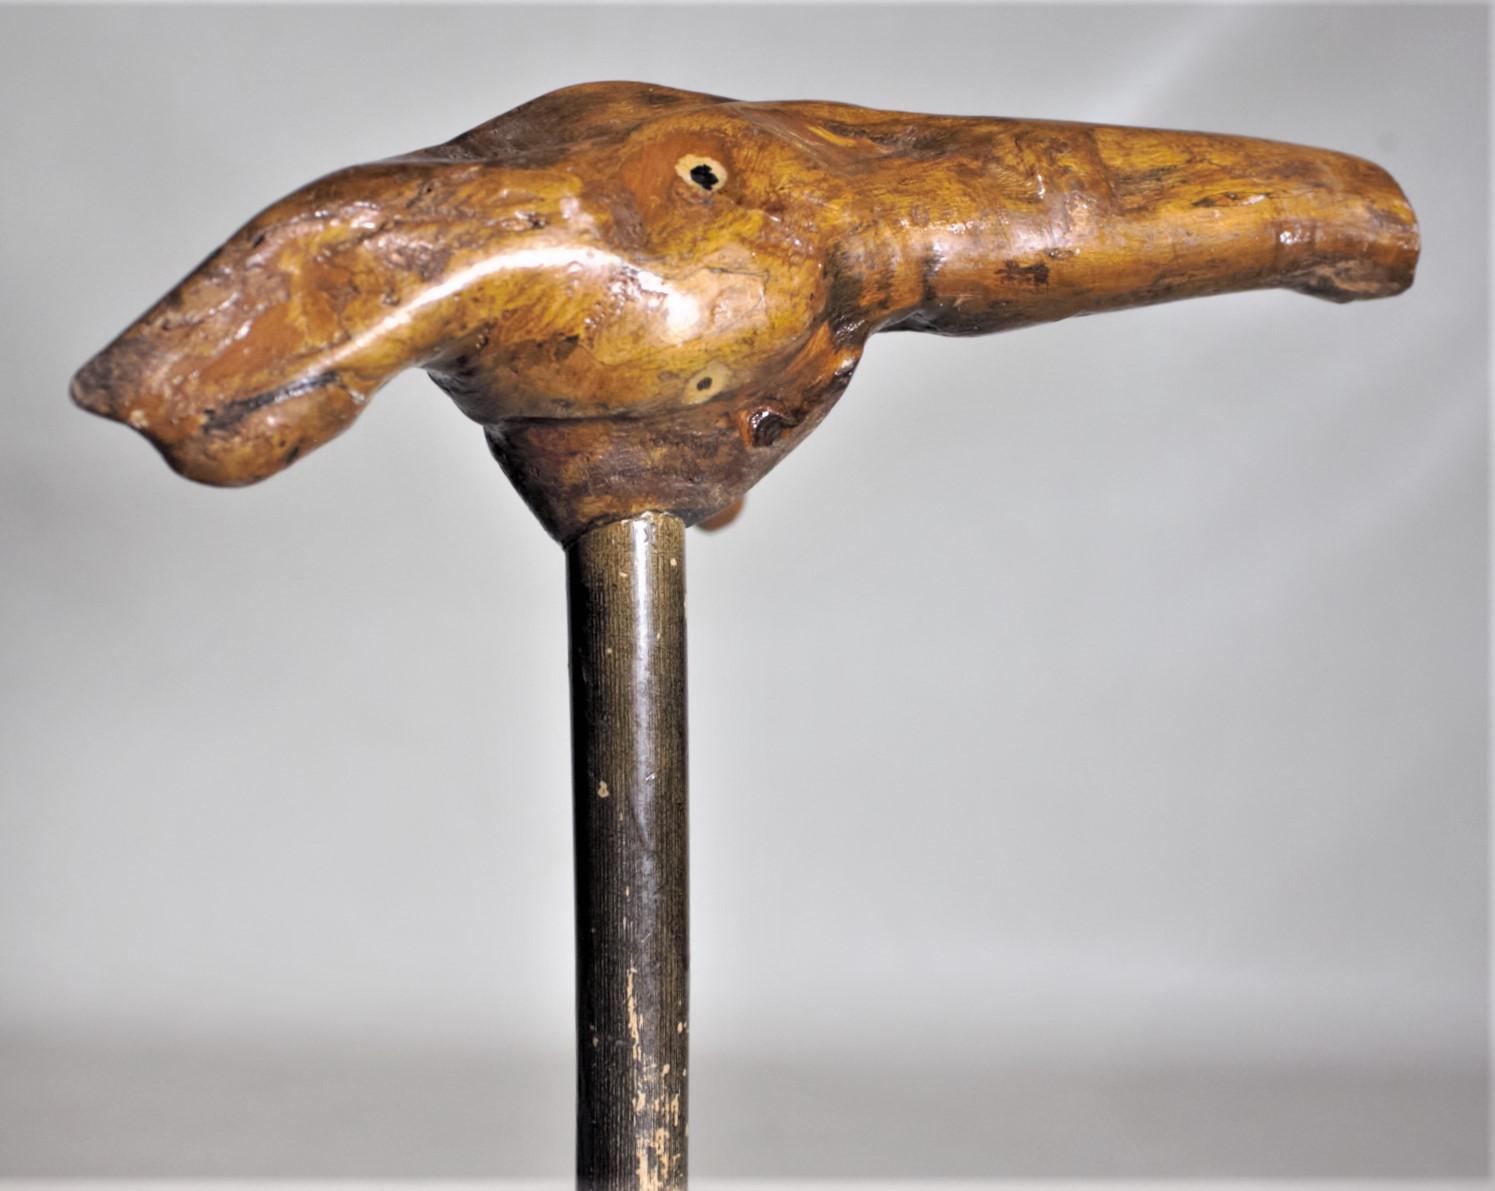 Cette canne ou bâton de marche Folk Art n'est pas du tout marquée, mais on suppose qu'elle a été fabriquée aux États-Unis vers 1920 dans le style Folk Art. Le manche de la canne est un morceau de bois brut laqué qui pourrait avoir été conçu pour